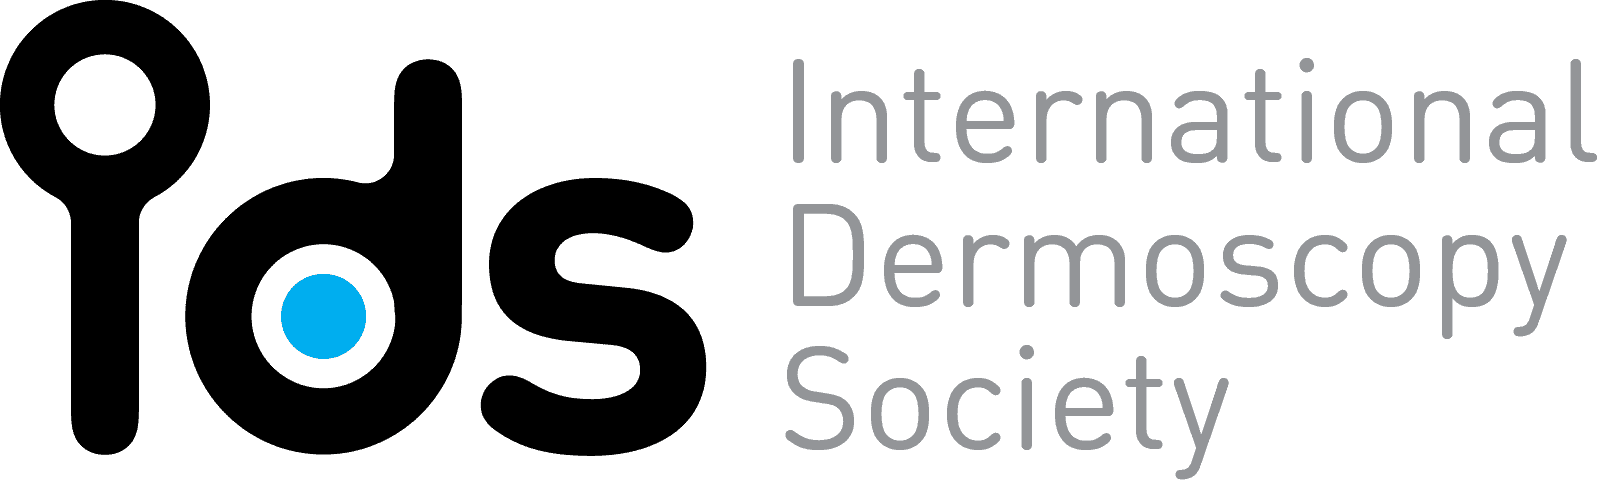 dermatology-society